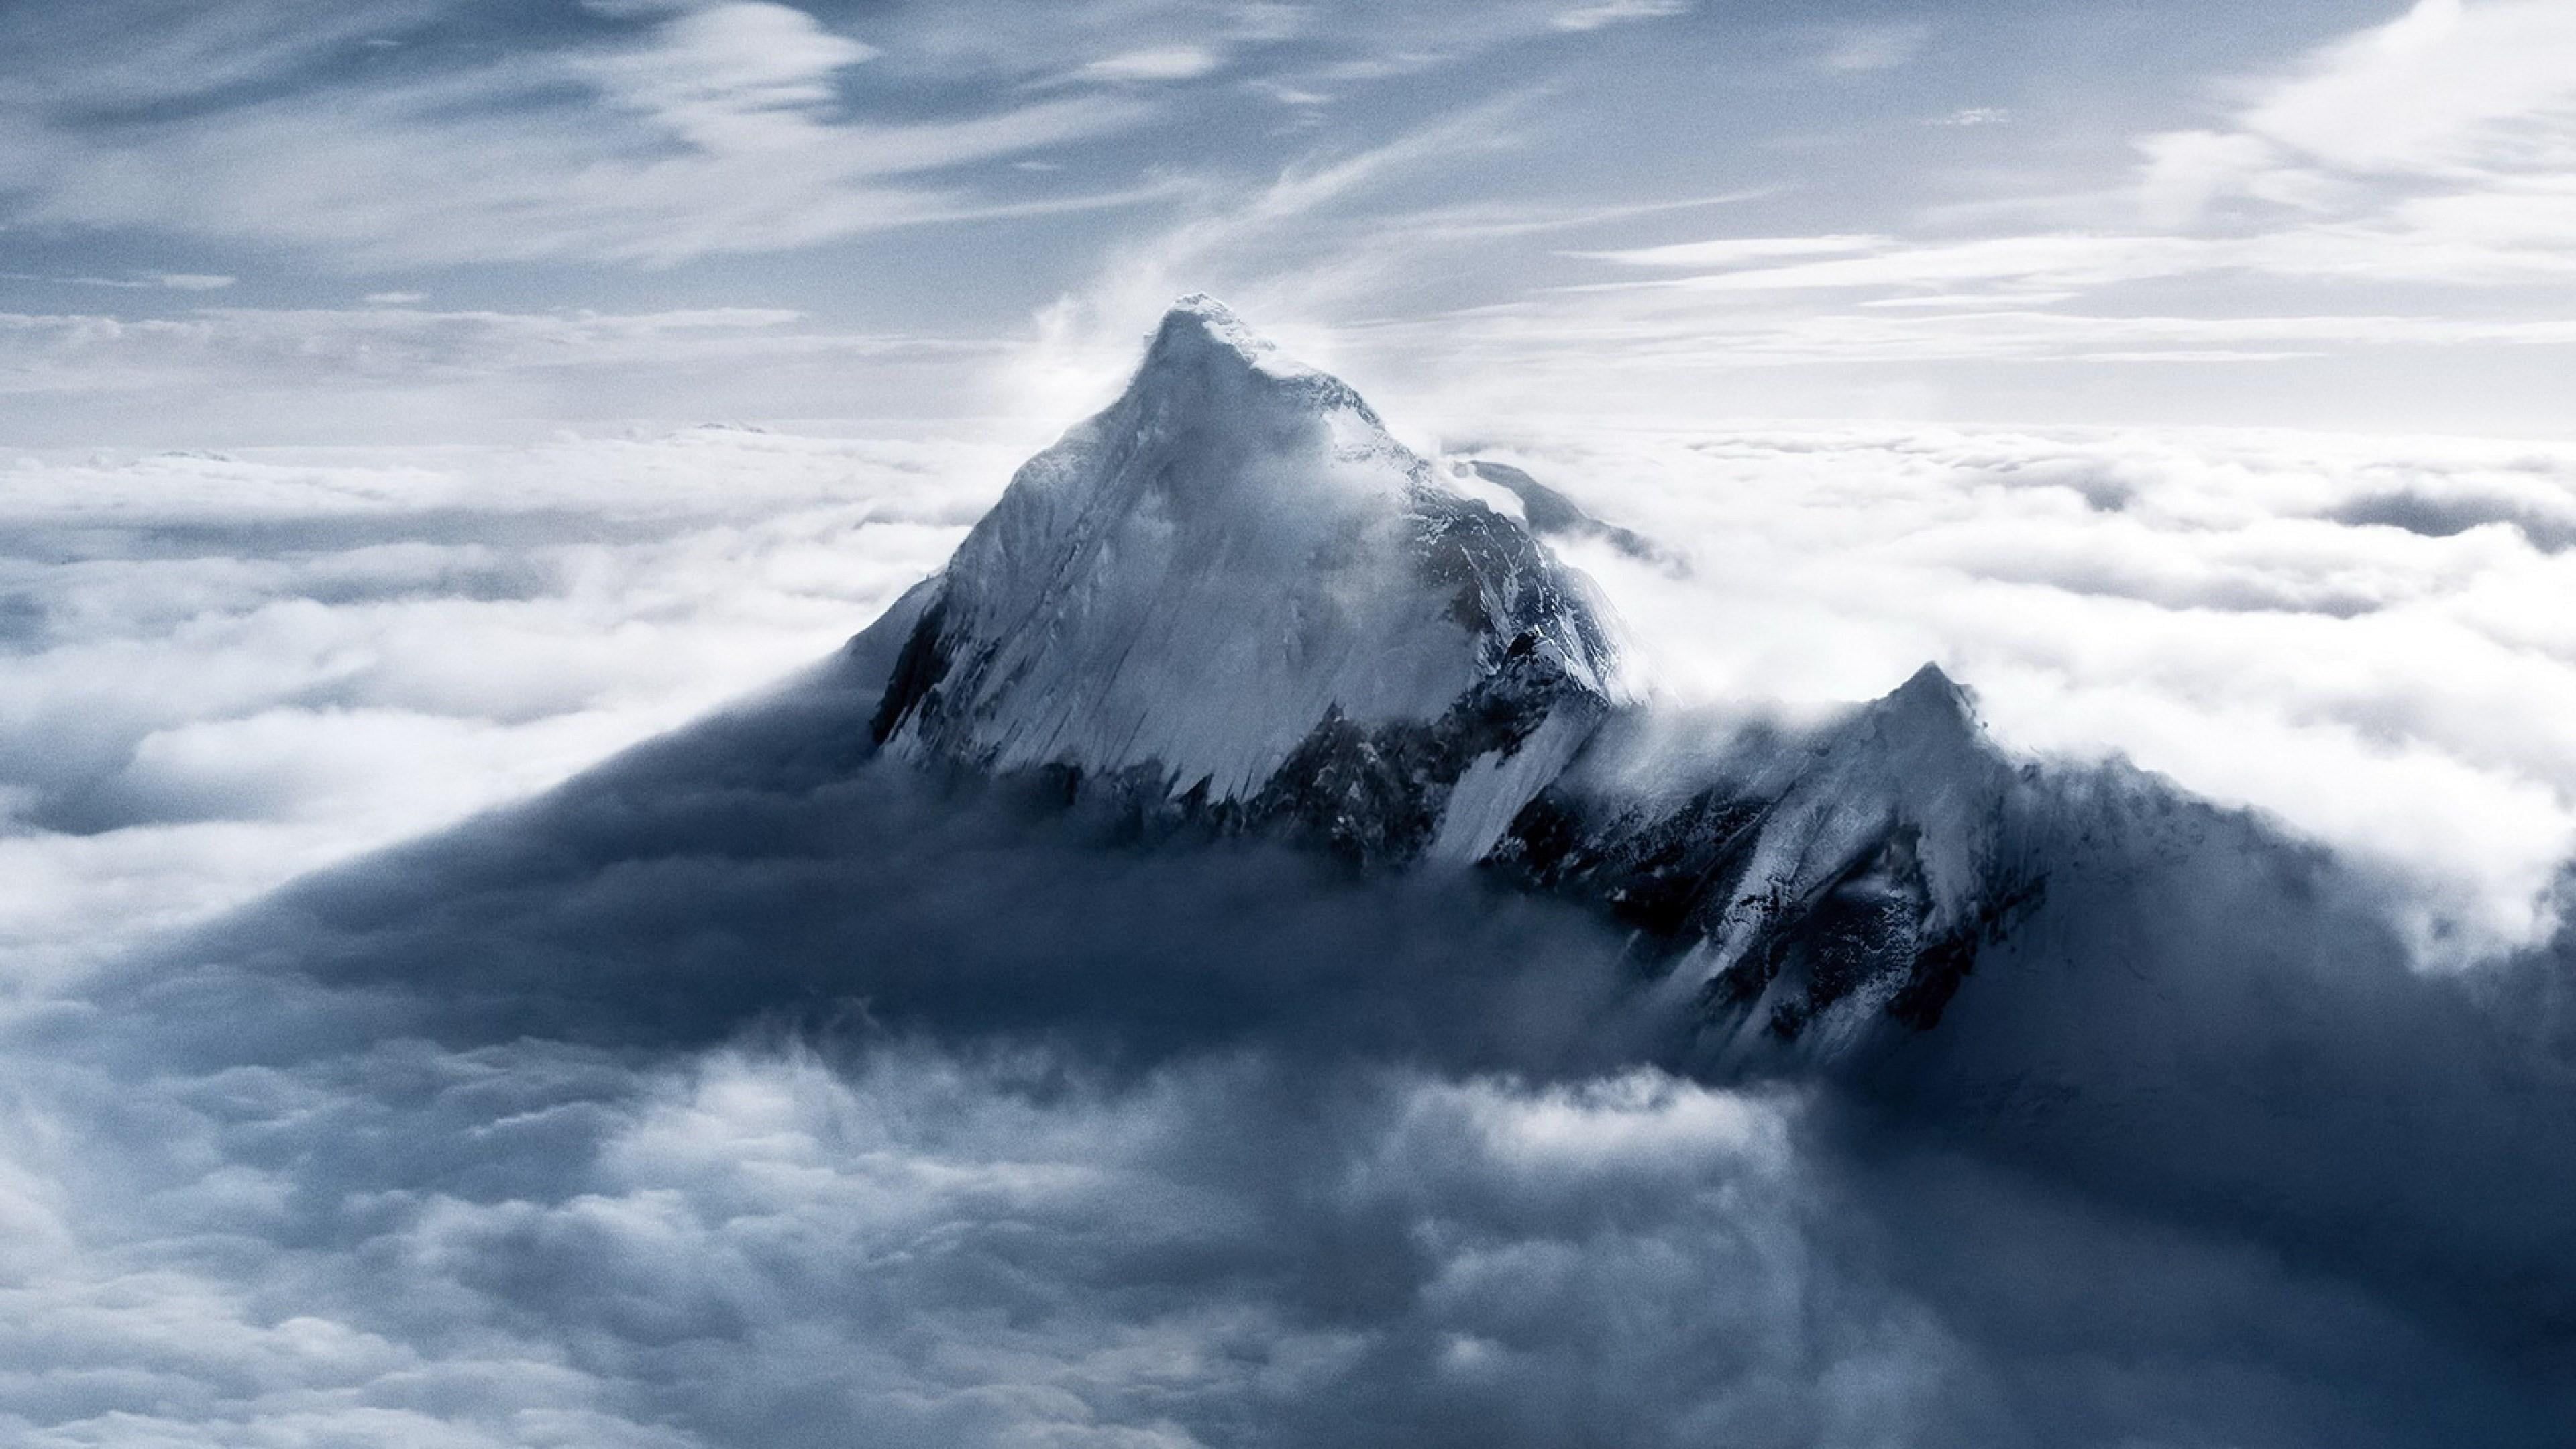 HD wallpaper: everest, mountain, cloud, peak, mount everest, snowy, cloud